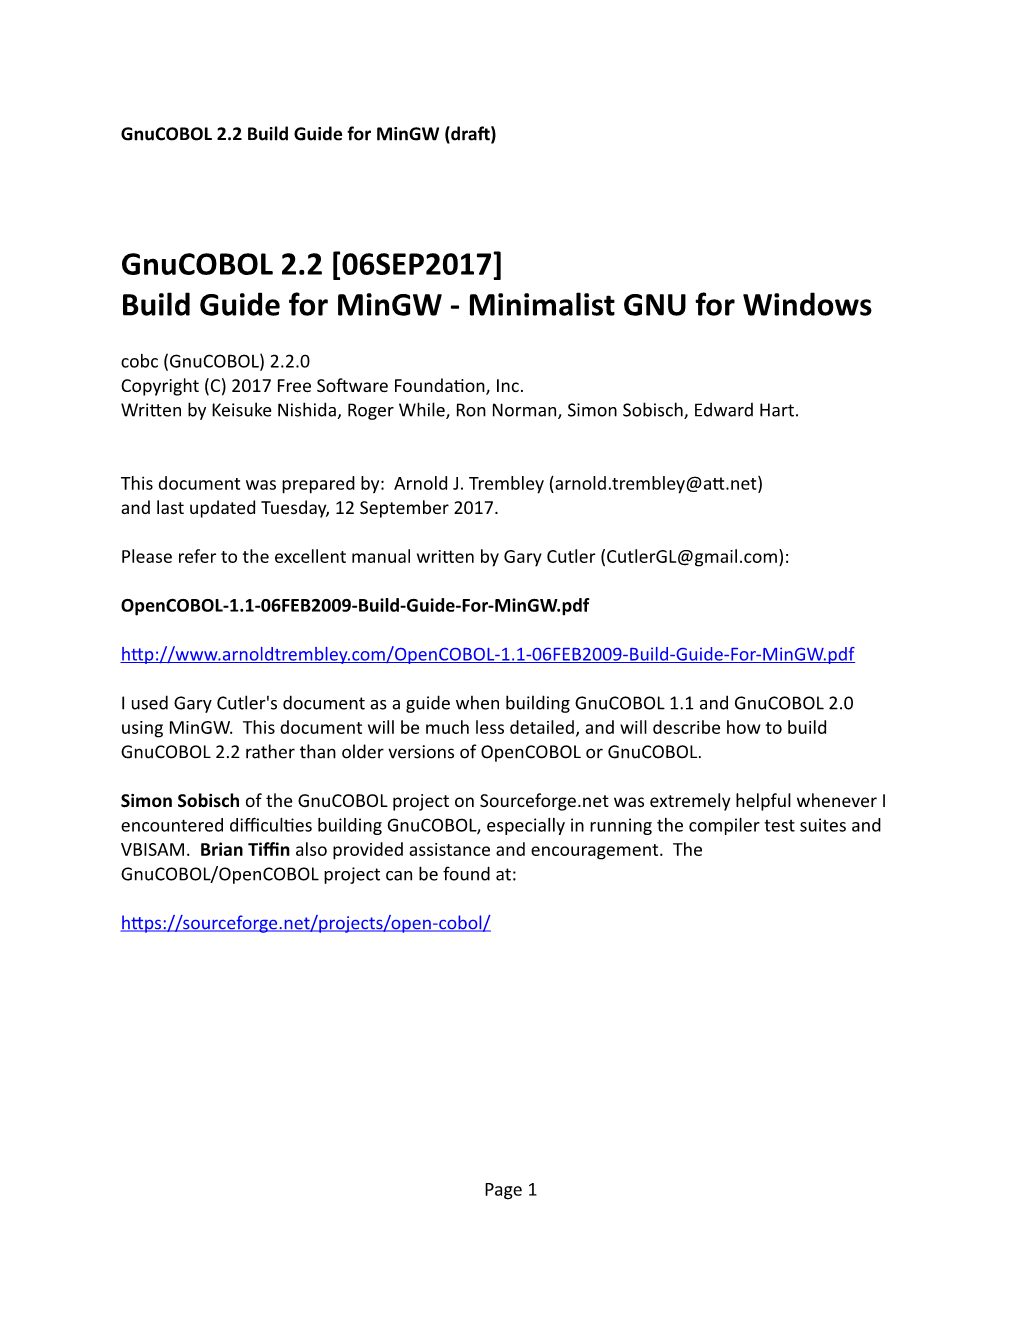 Gnucobol 2.2 Build Guide for Mingw (Draft)